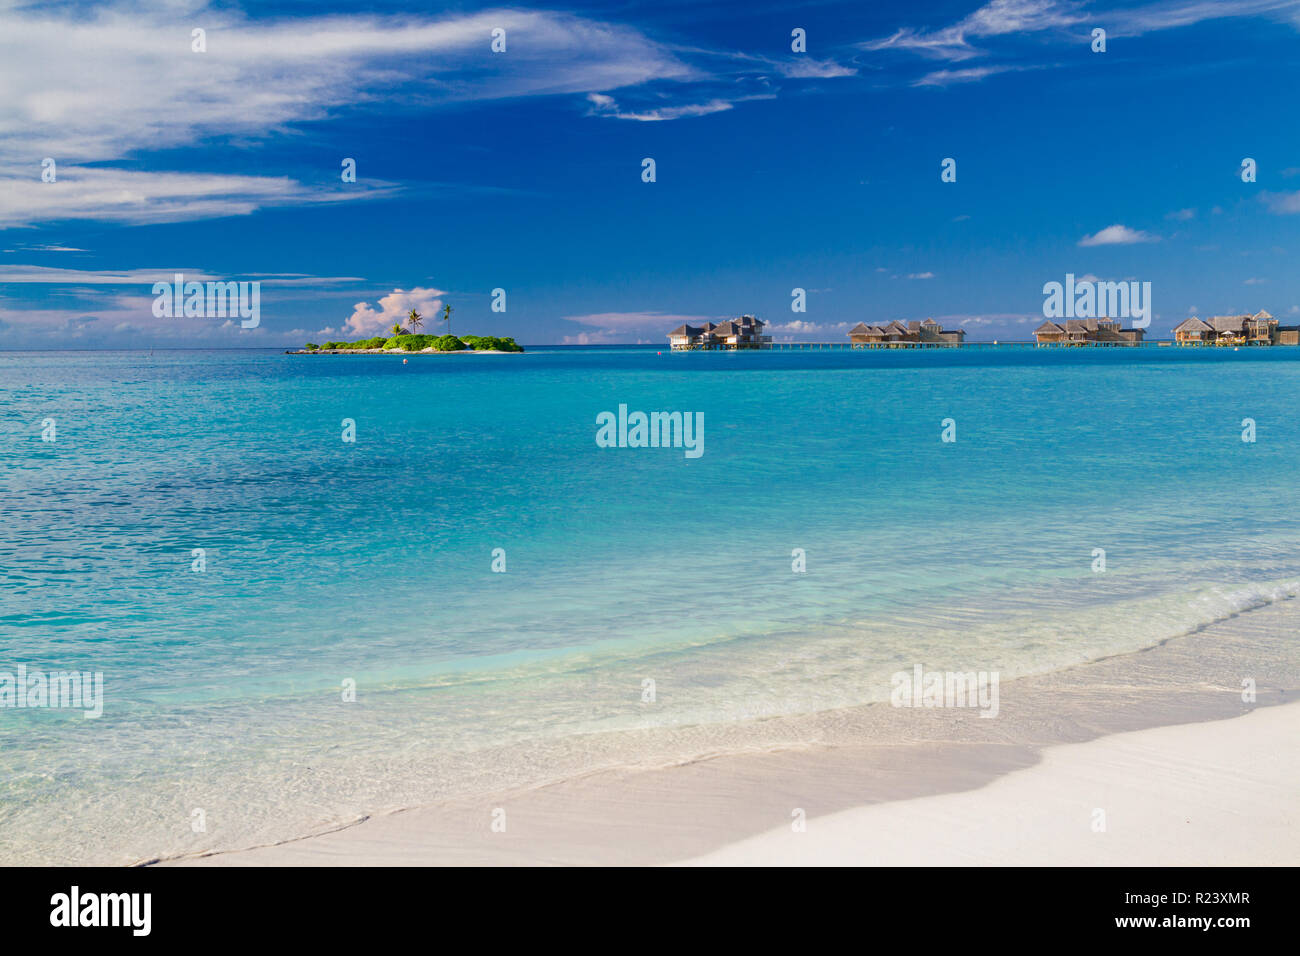 Tropische Insel mit Sandstrand, türkisblauem Wasser und Überwasser-Bungalow, Malediven. Luxus Sommer Reise und Urlaub, exotisches Ziel Stockfoto